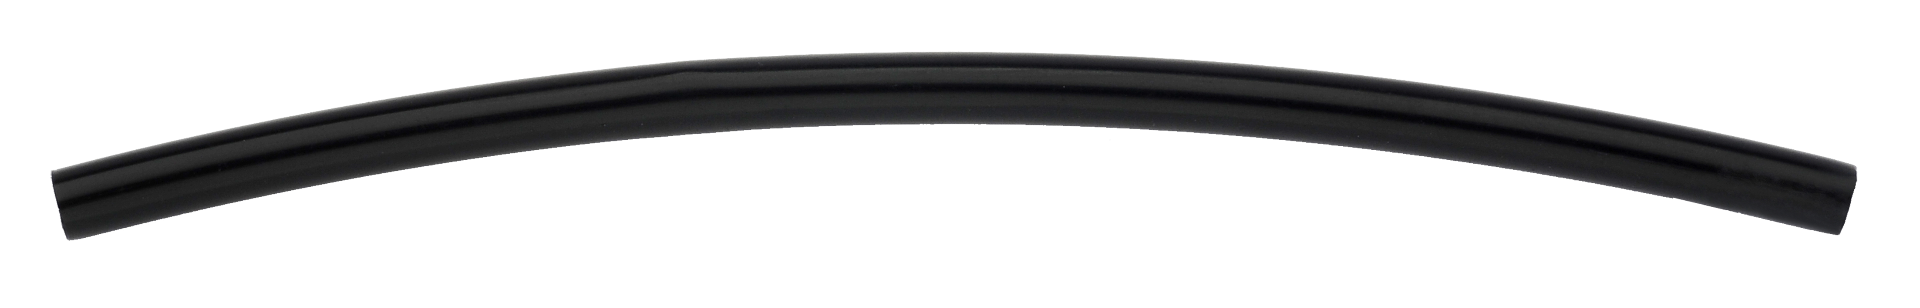 tubo-de-nylon-pa-6-8mm